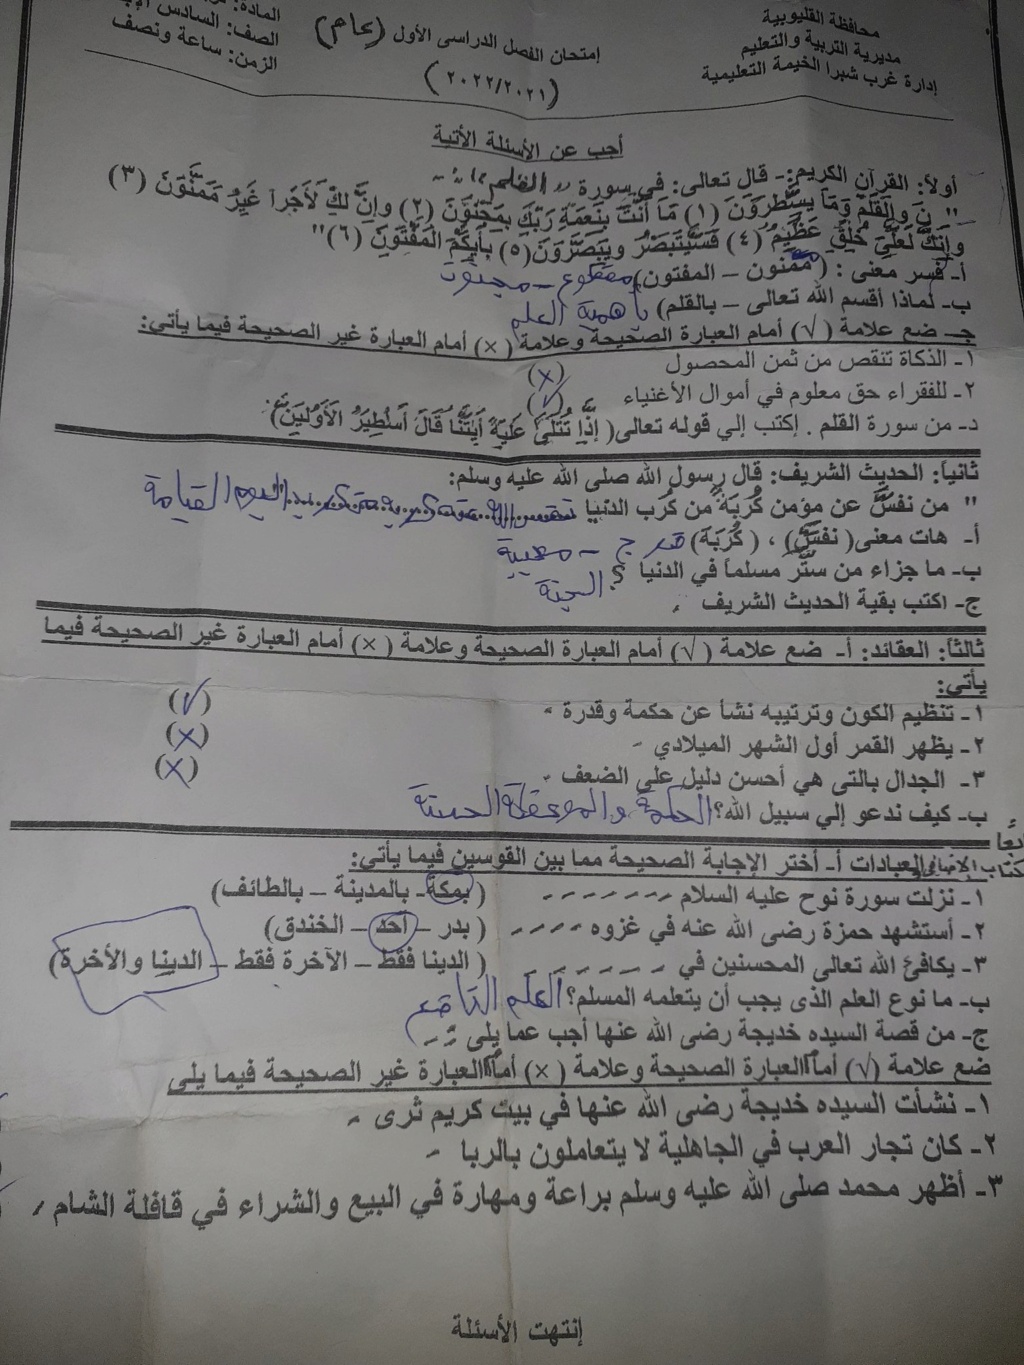 امتحان اللغة العربية والدين للصف السادس ترم أول 2022 إدارة غرب شبرا التعليمية 1815